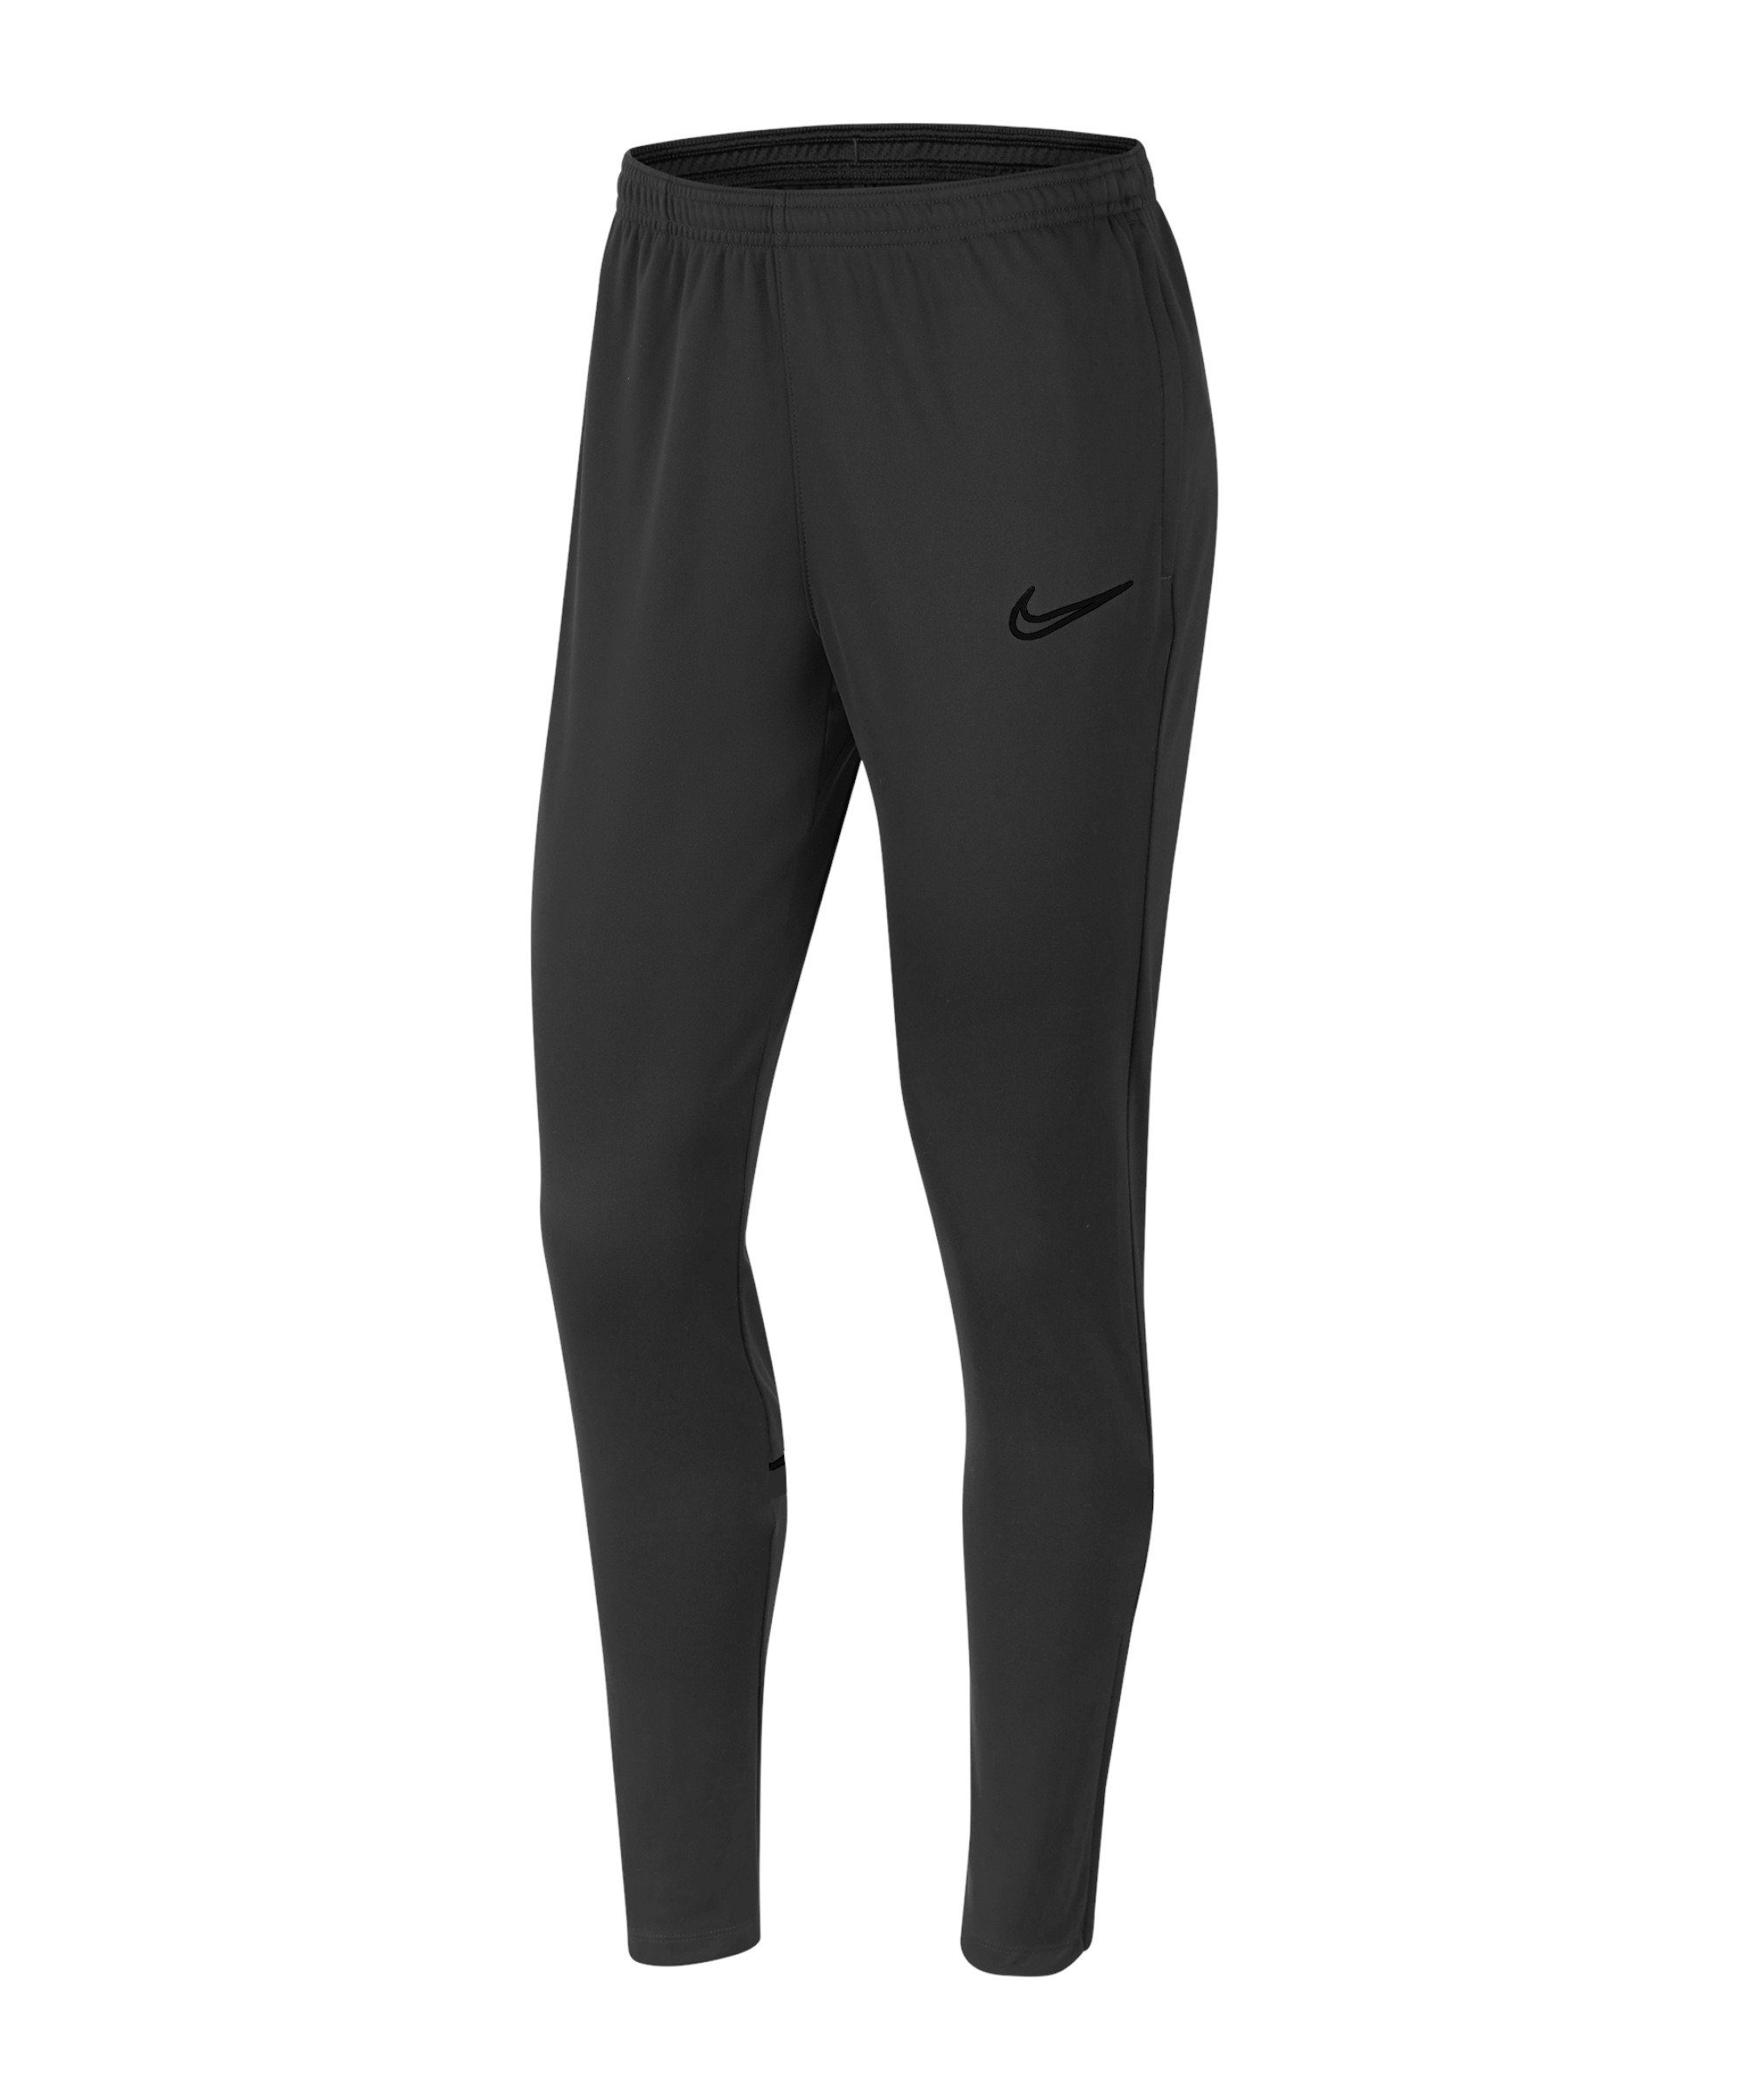 Weiße Nike Damen Jogginghosen online kaufen | OTTO